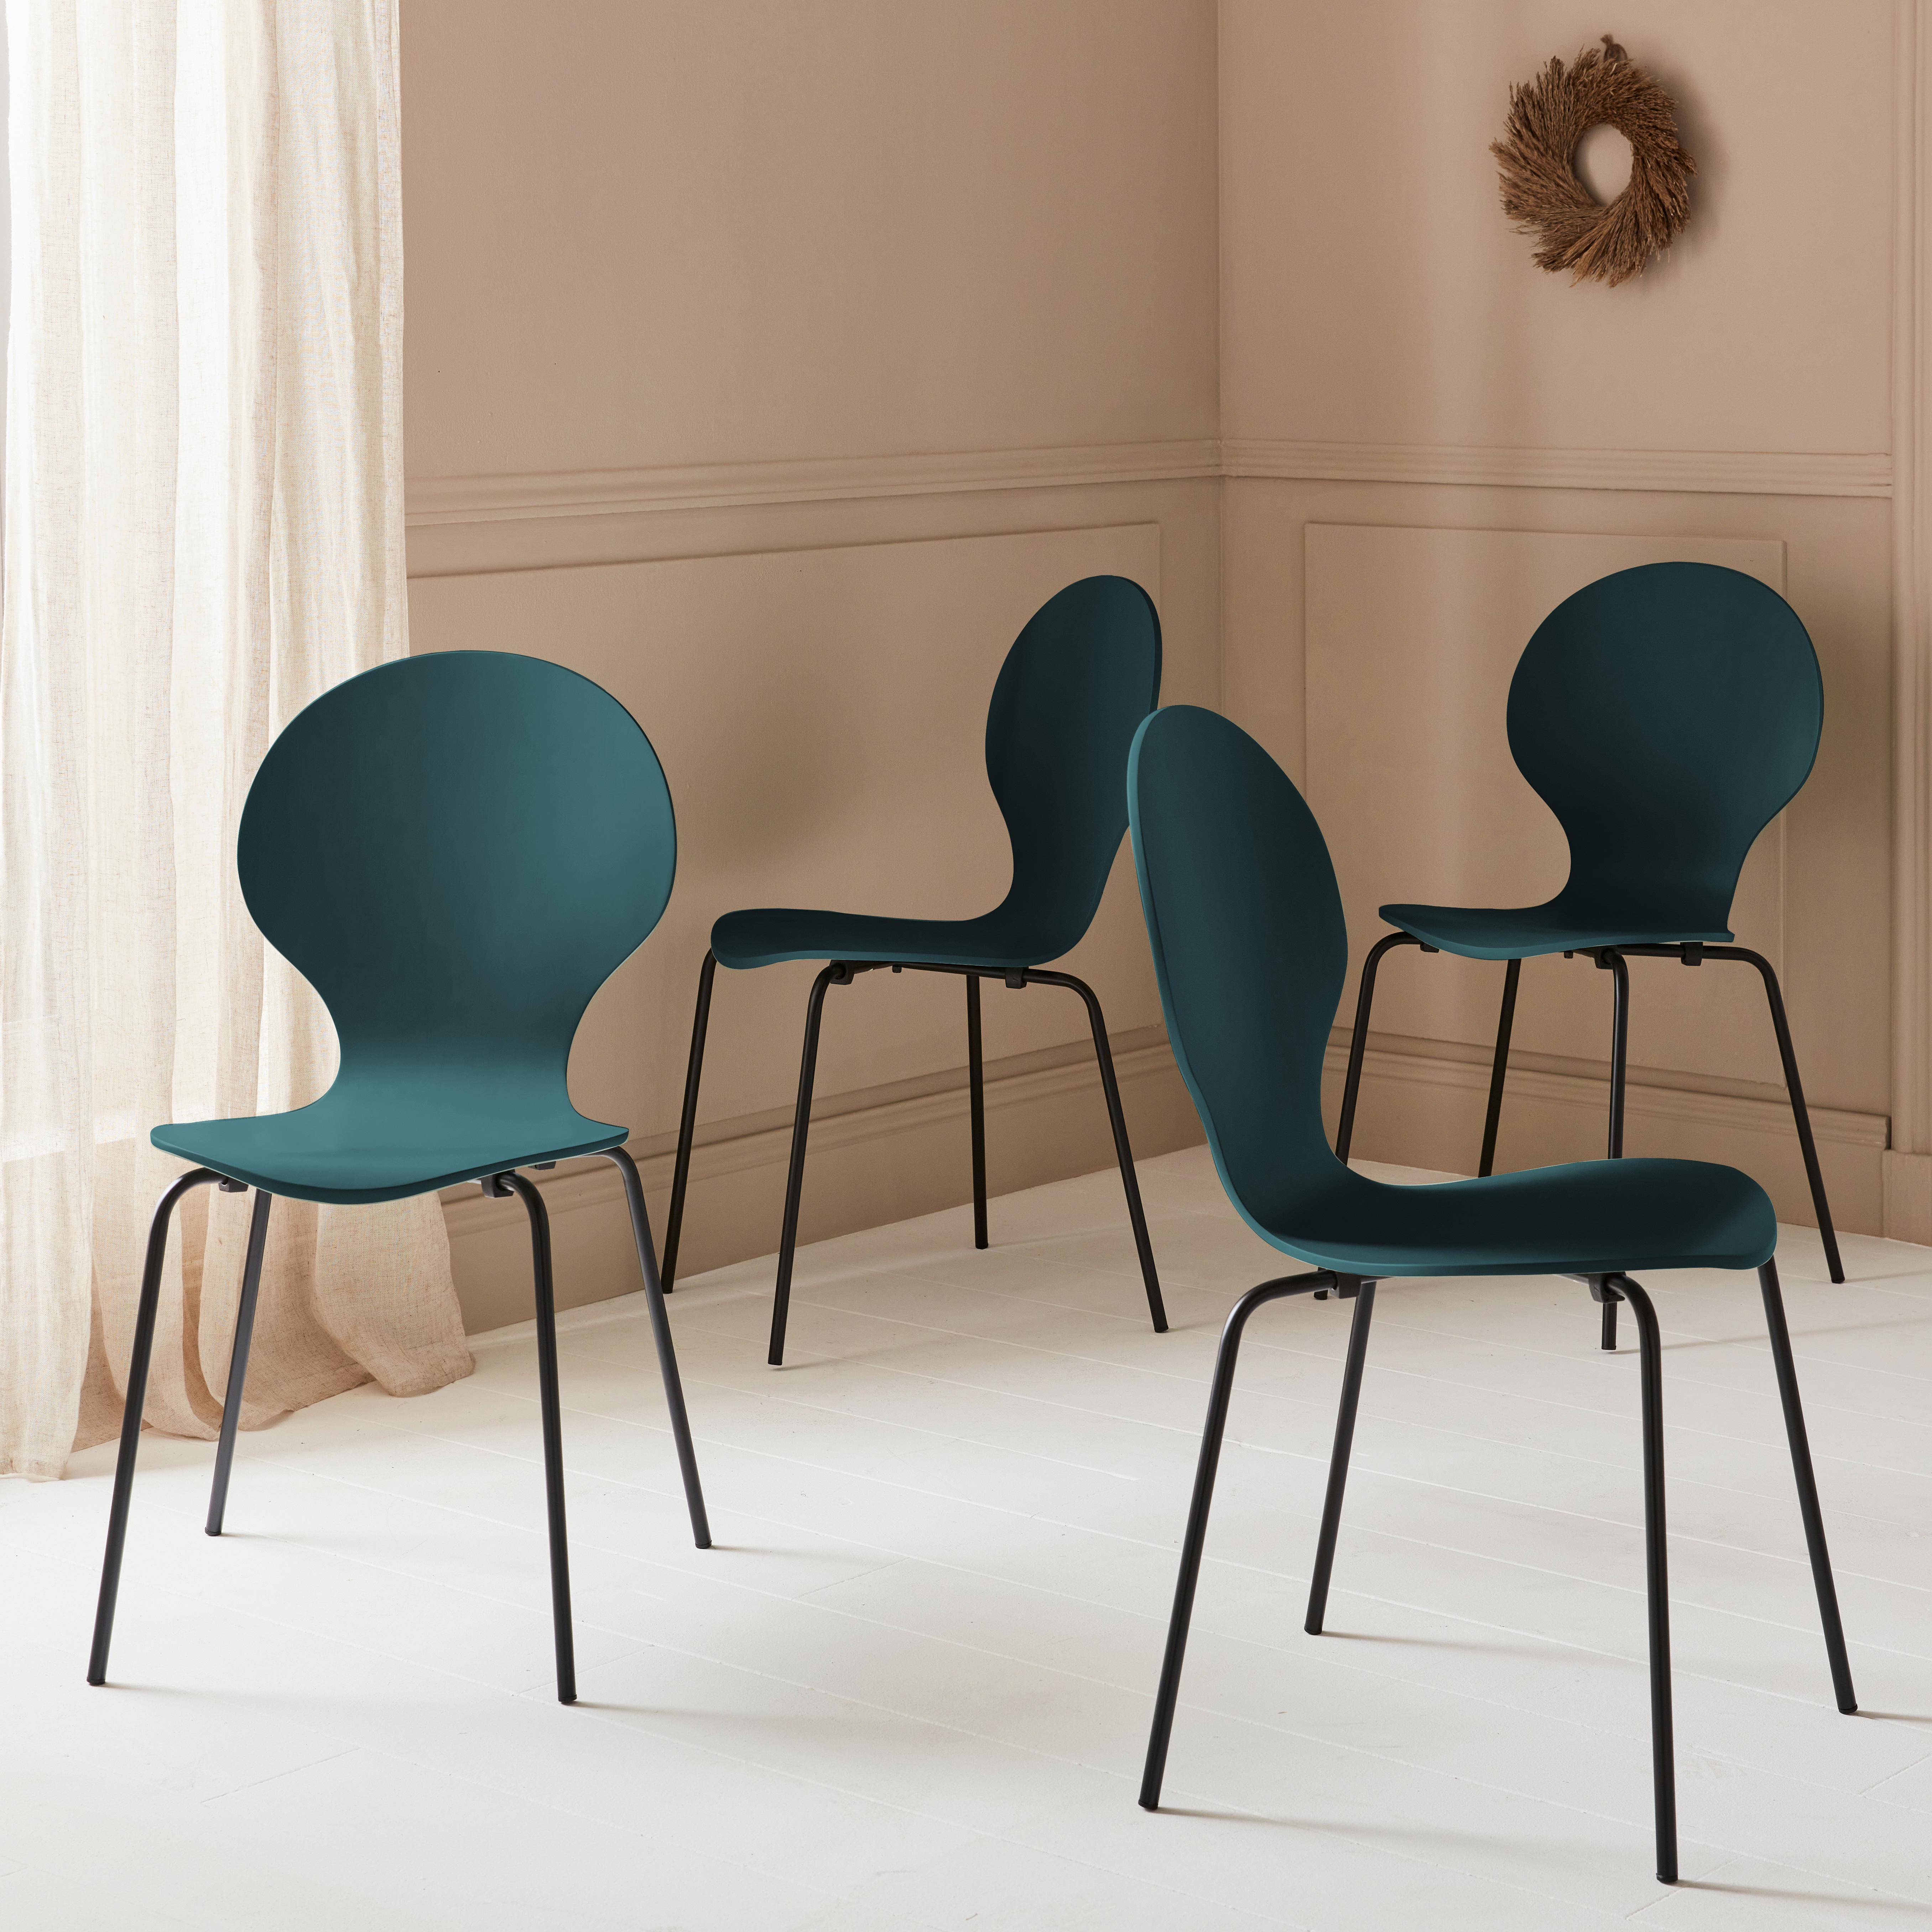 4er Set stapelbare Retro-Stühle in blau, Hevea-Holz und Sperrholz, Beine aus Stahl, Naomi, B 43 x T 48 x H 87cm,sweeek,Photo2